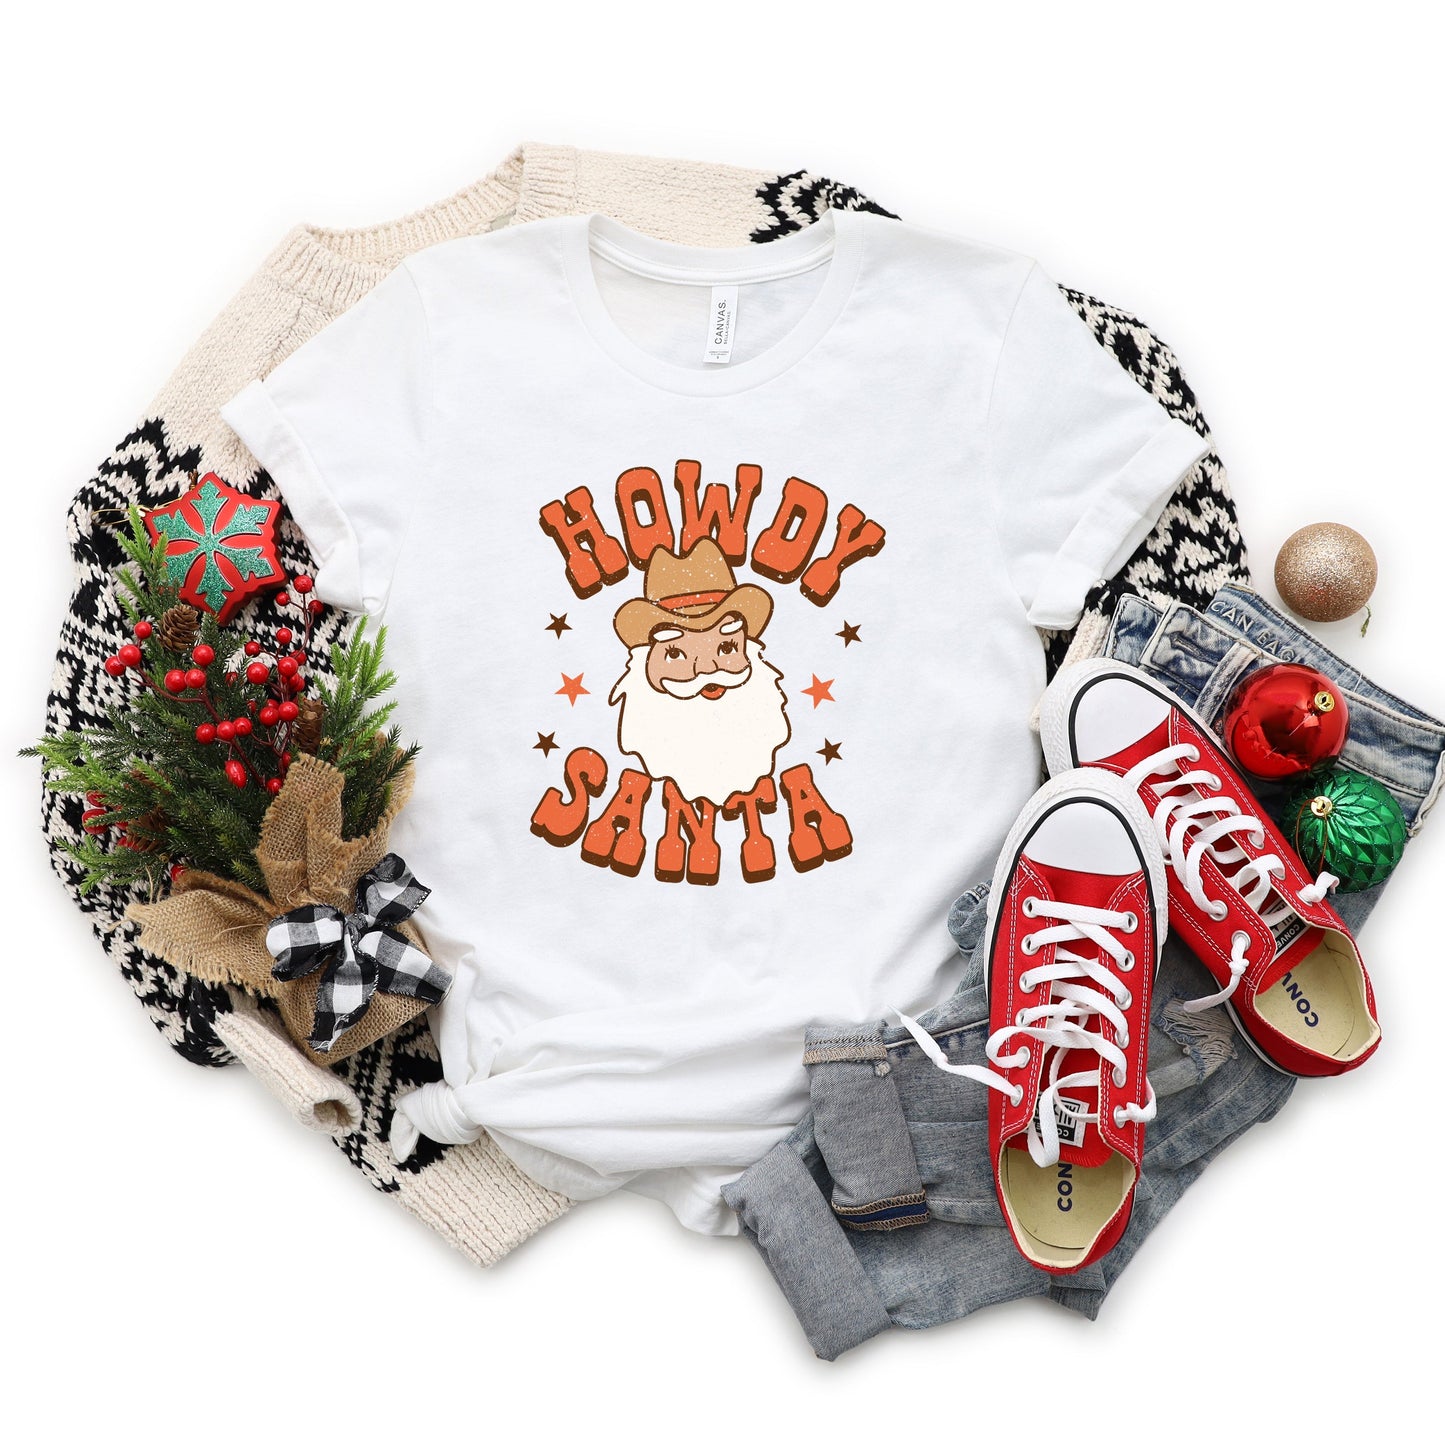 Retro Howdy Santa | Short Sleeve Crew Neck